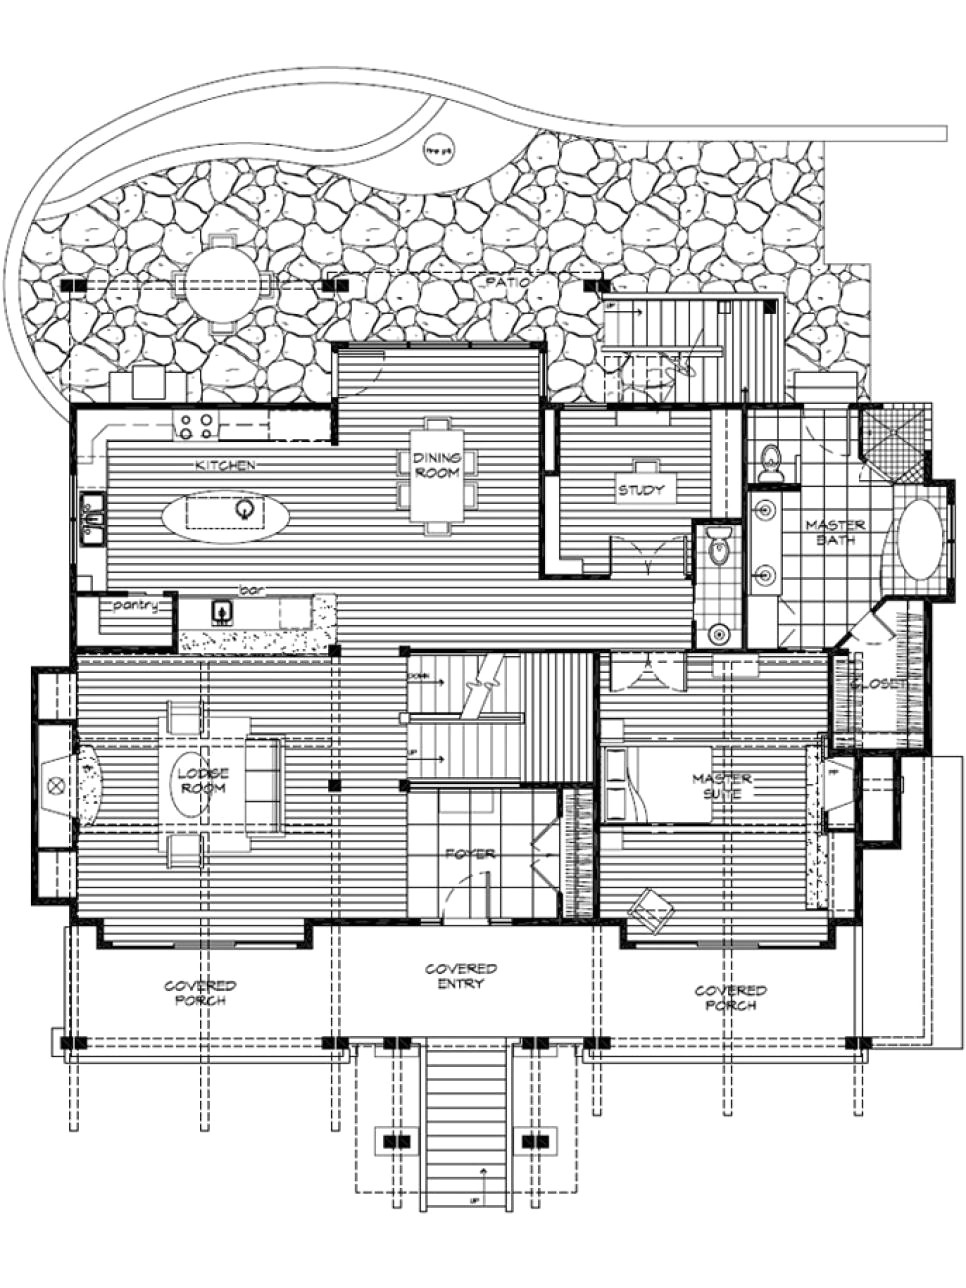 dream home house plans fresh floor plans for hgtv dream home 2007